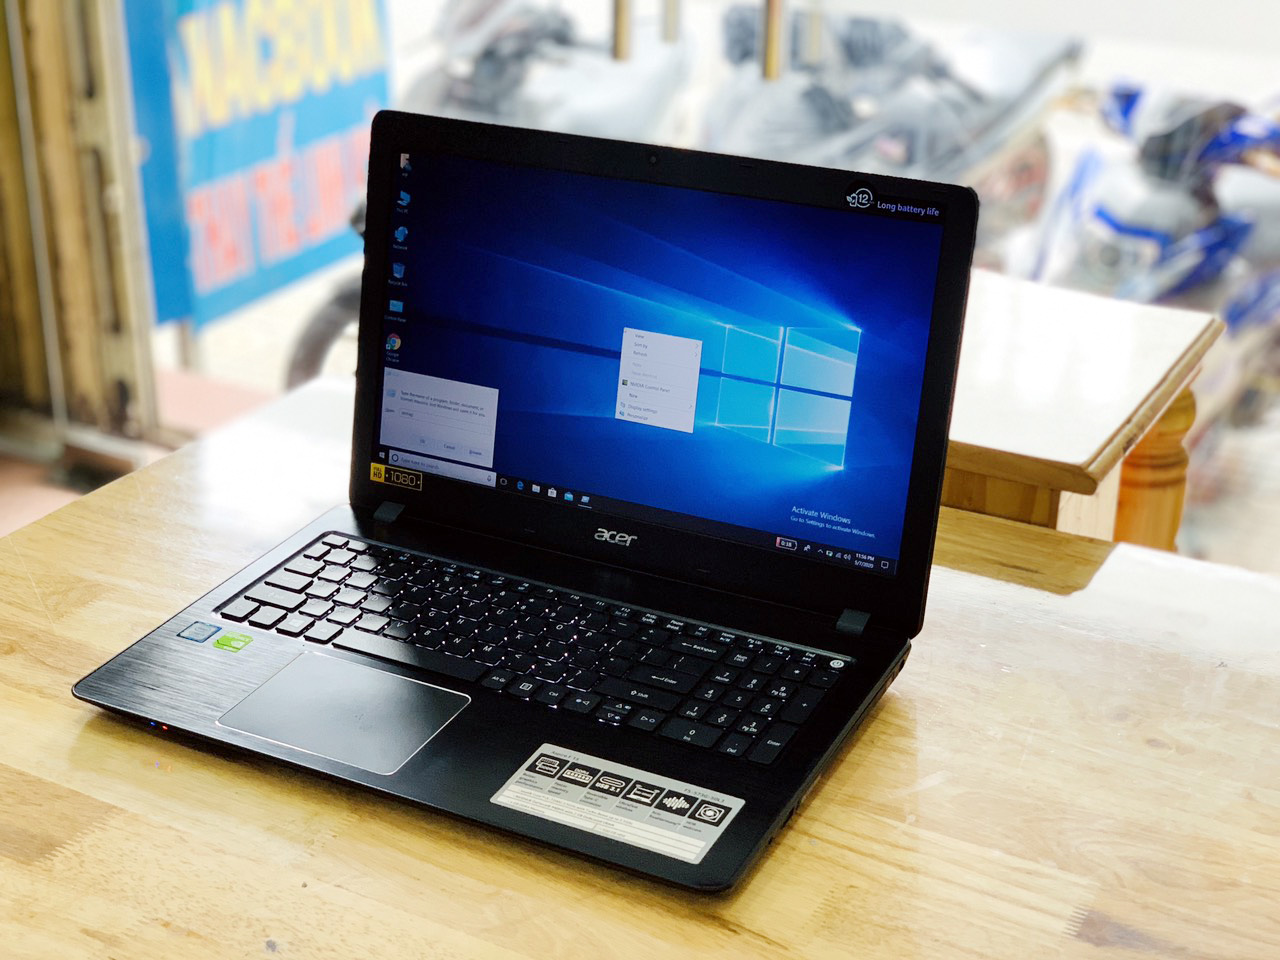 Laptop Acer Aspire F5-573G i5-7200U Ram 4G SSD 128G+HDD 500G Vga Rời Nvidia 940MX 15.6 inch Full HD Mỏng Đẹp